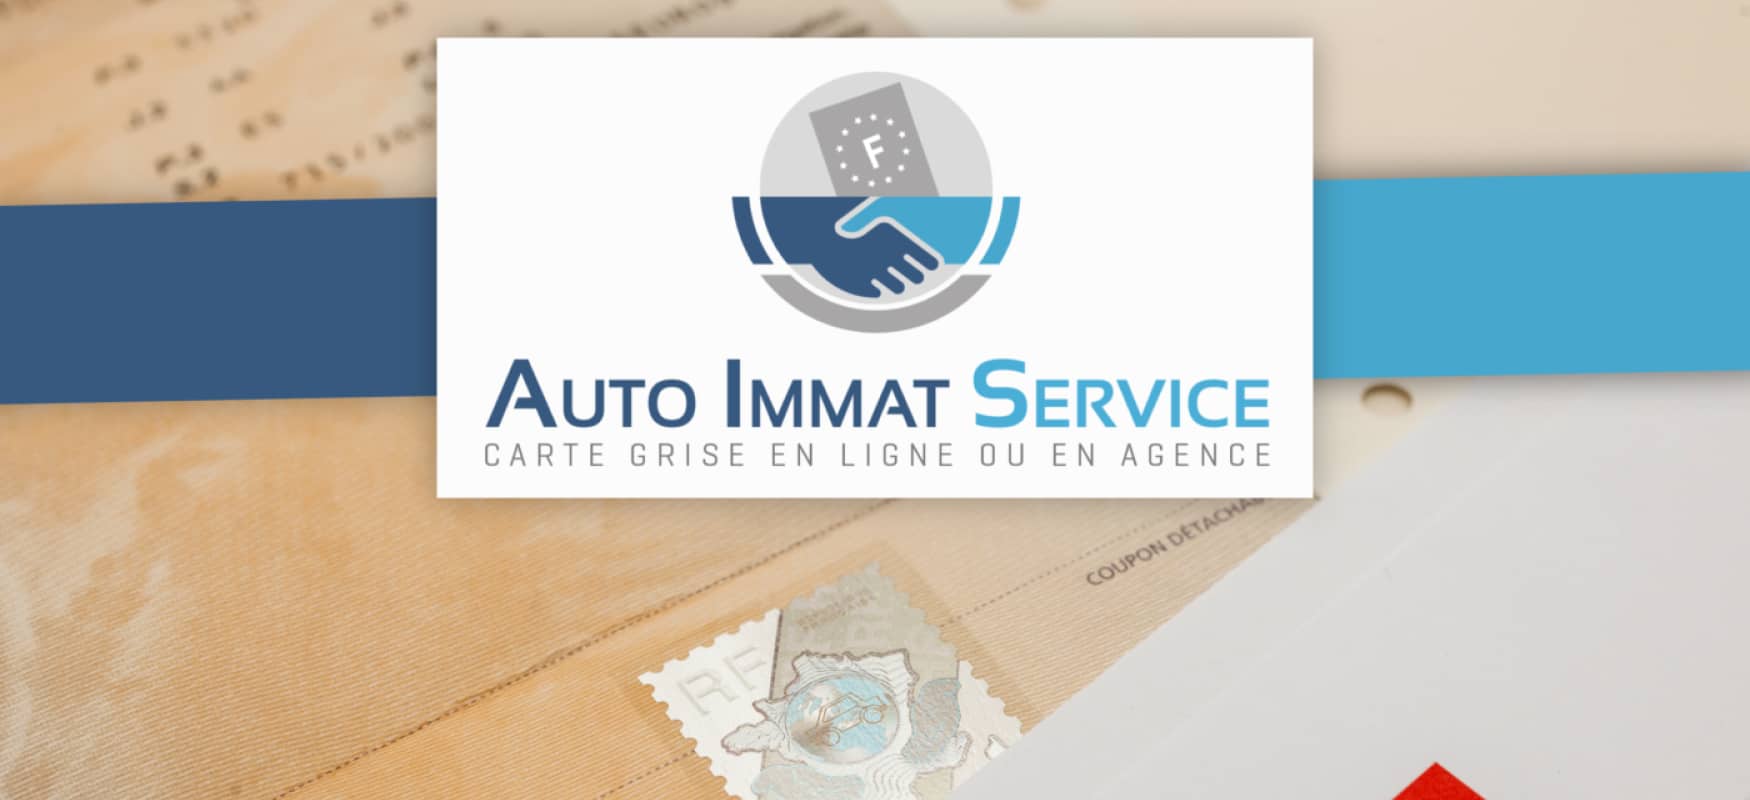 Votre service carte grise avec Auto Immat Service by Lerat Location !